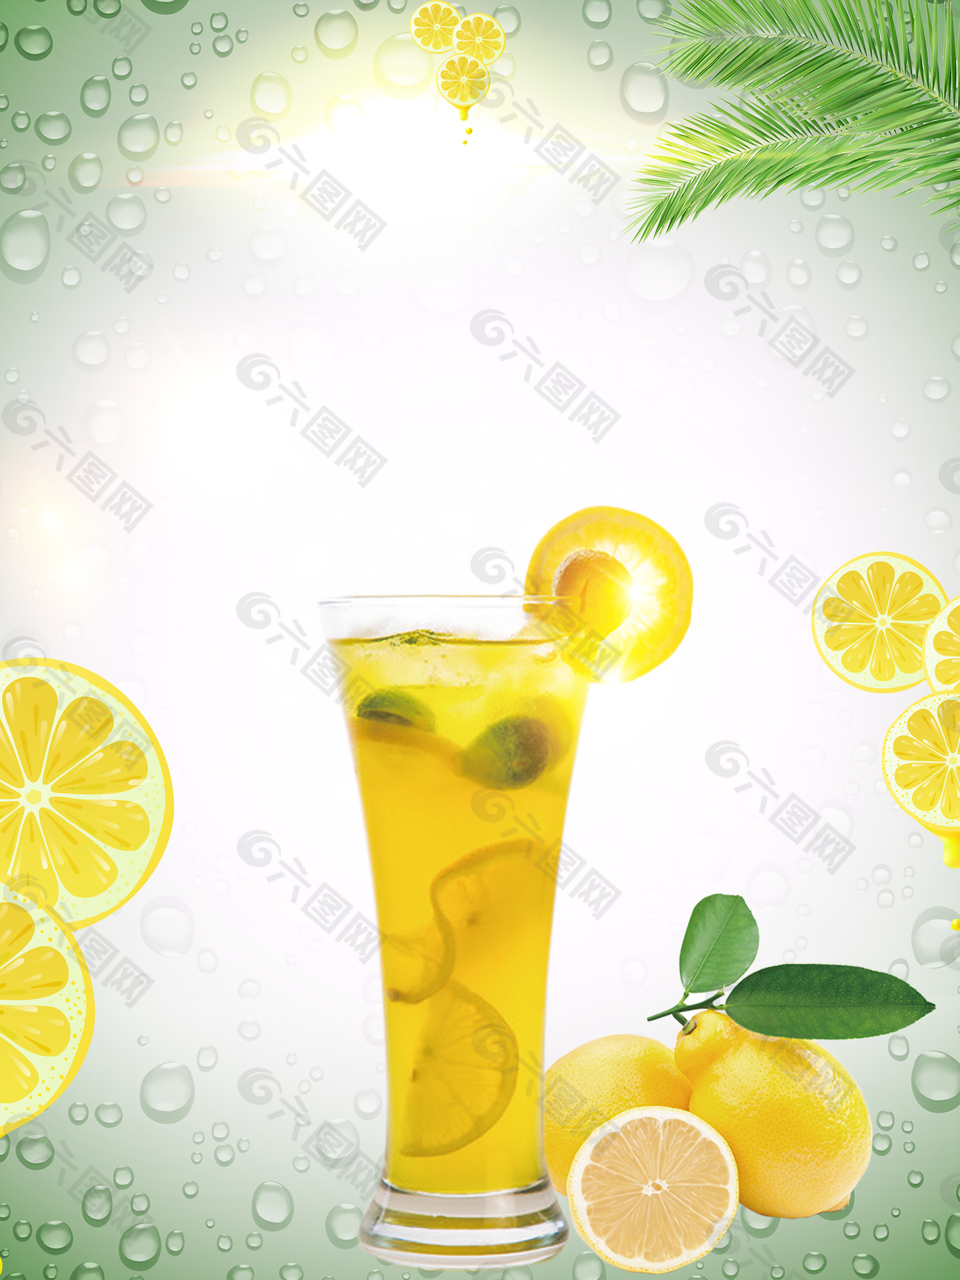 夏季饮料柠檬汁商业海报背景素材